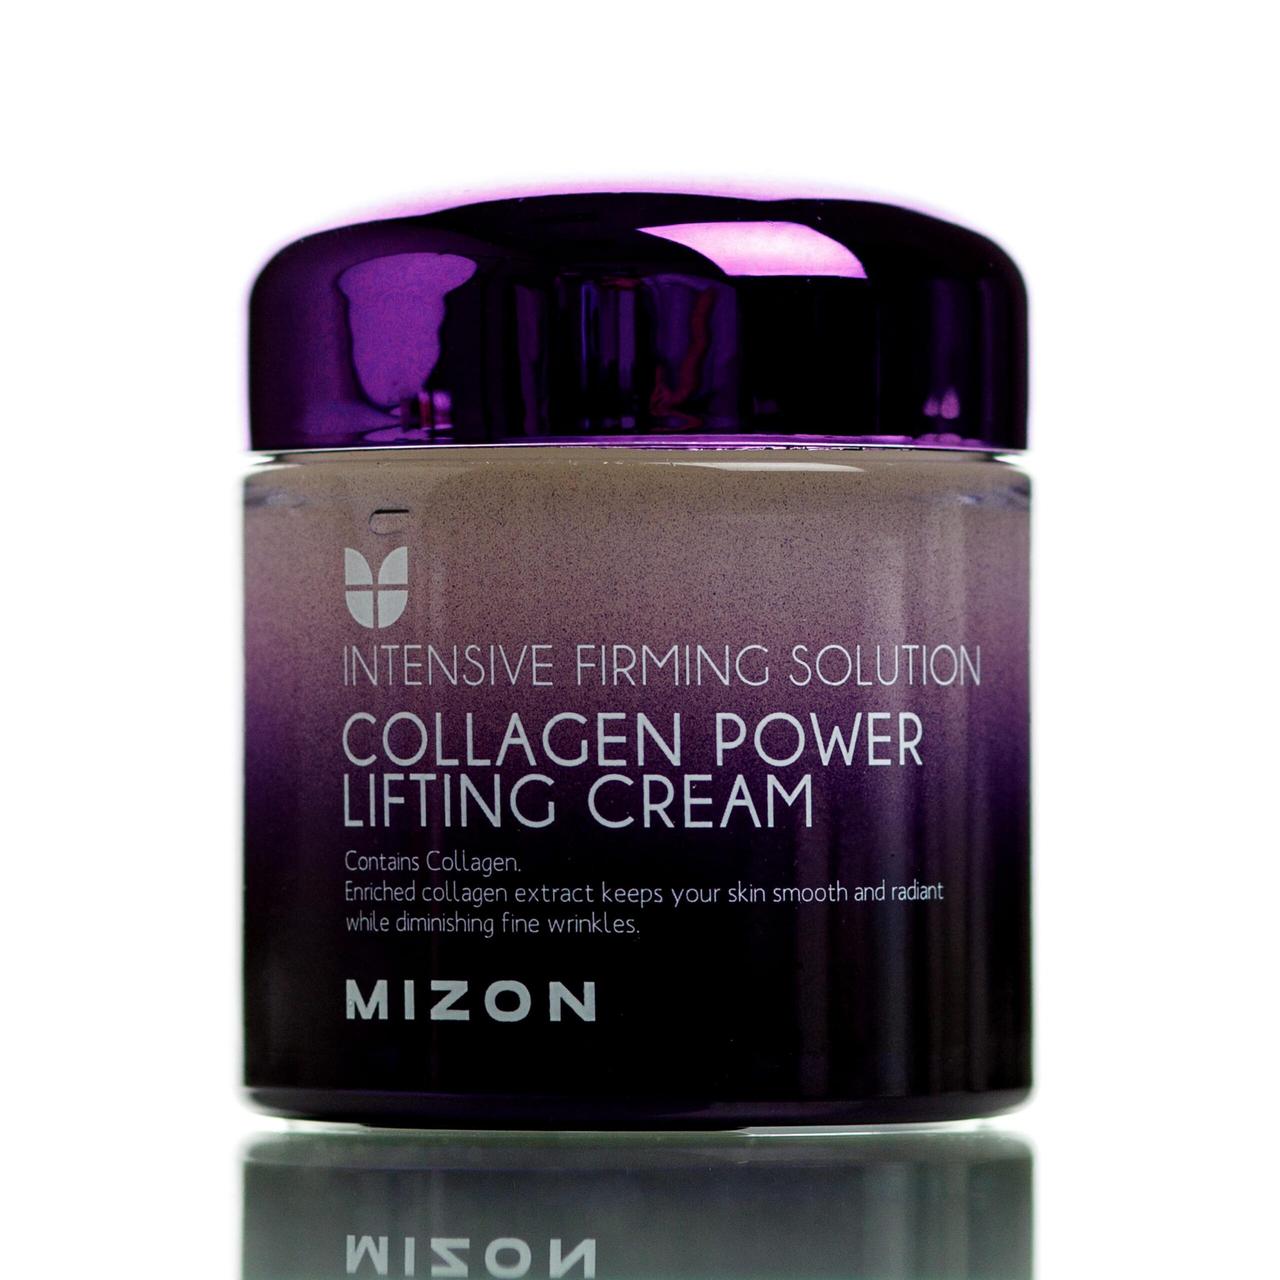 

Коллагеновый лифтинг-крем для лица Mizon Collagen Power Lifting Cream, 75 мл